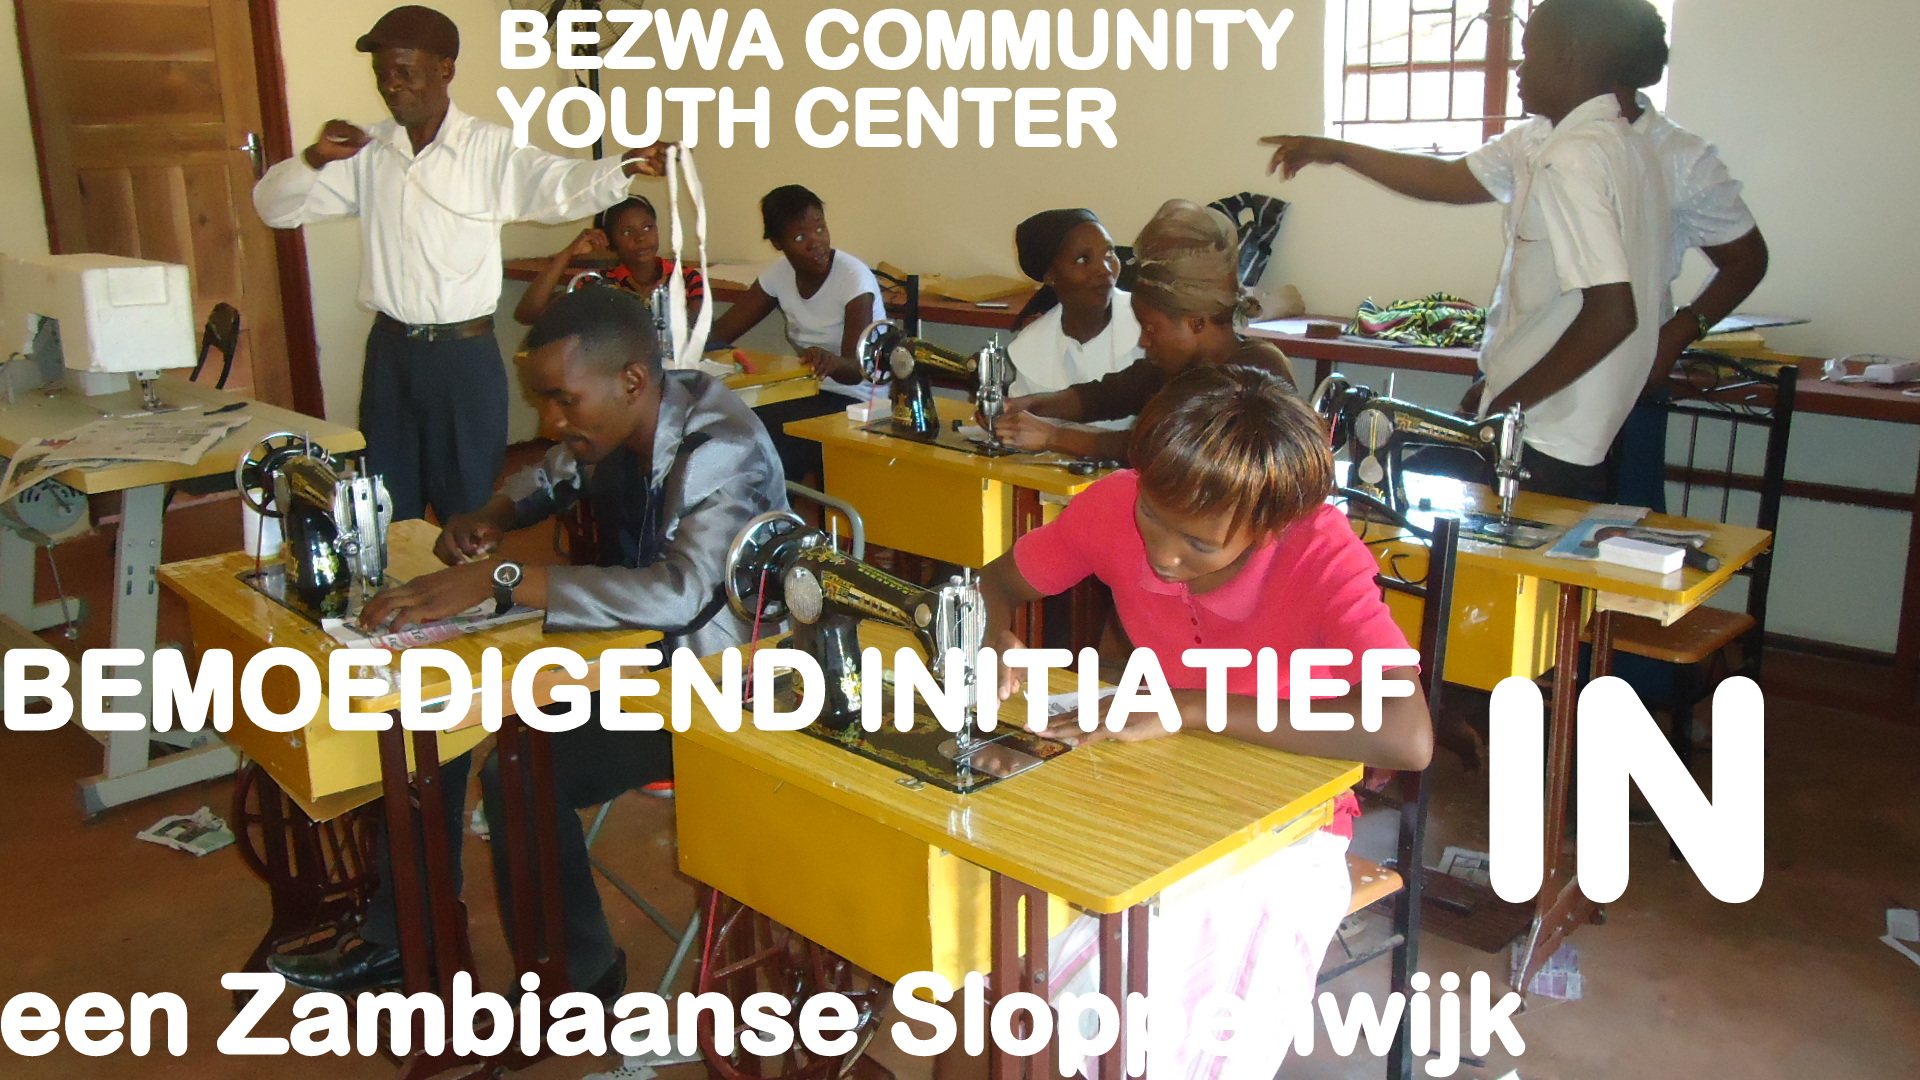 Bezwa Foundation